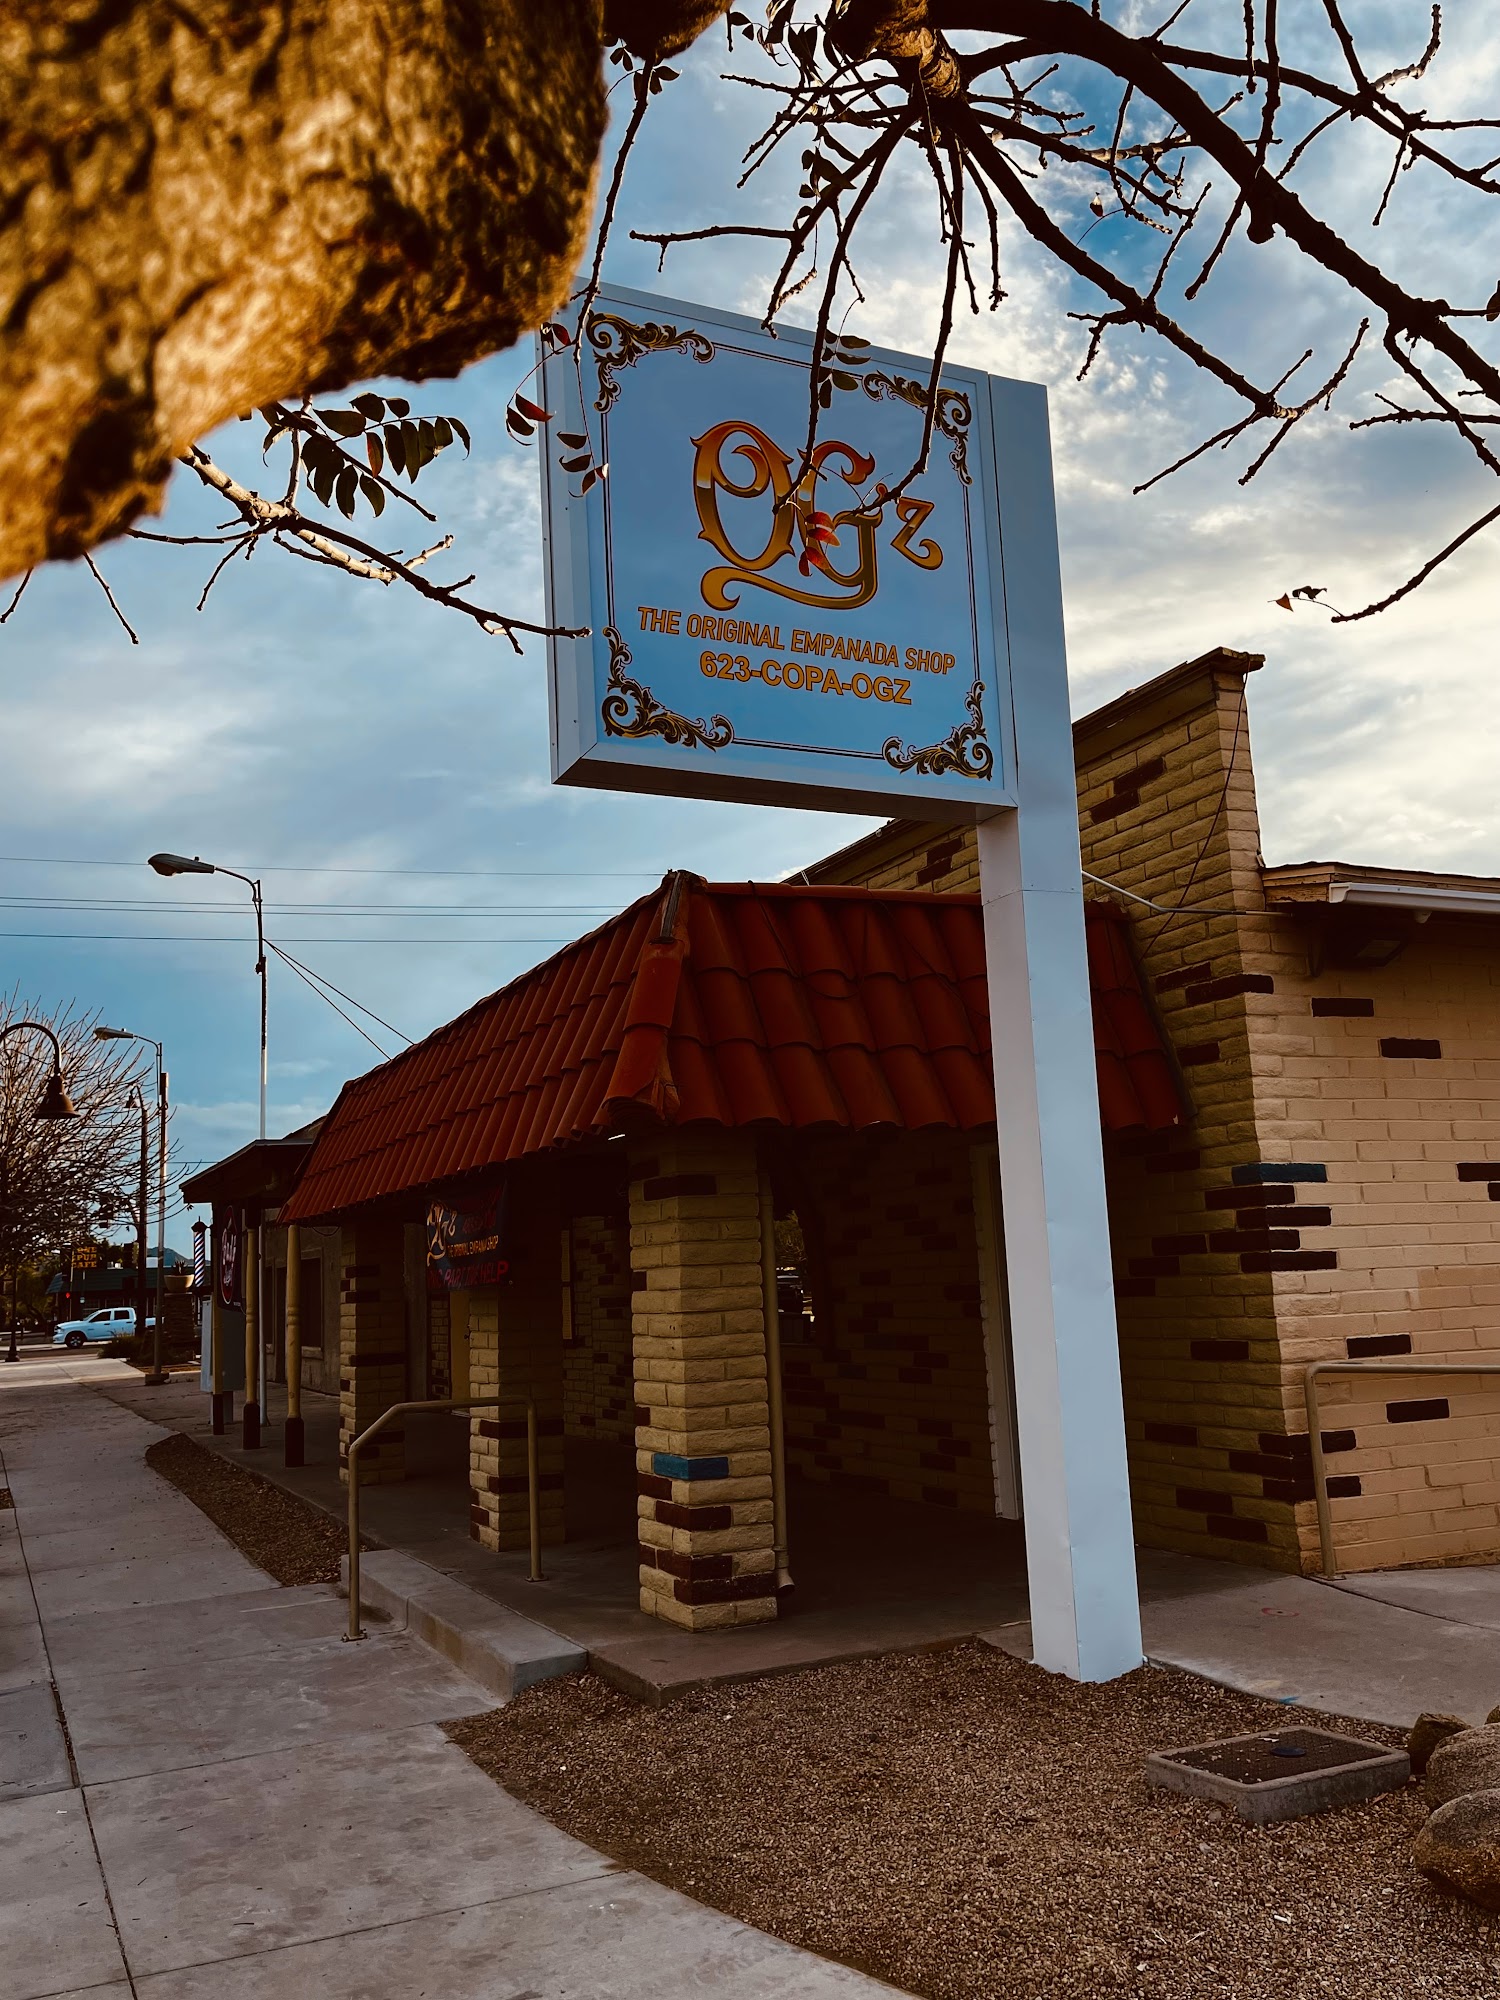 OG'z The Original Empanada Shop